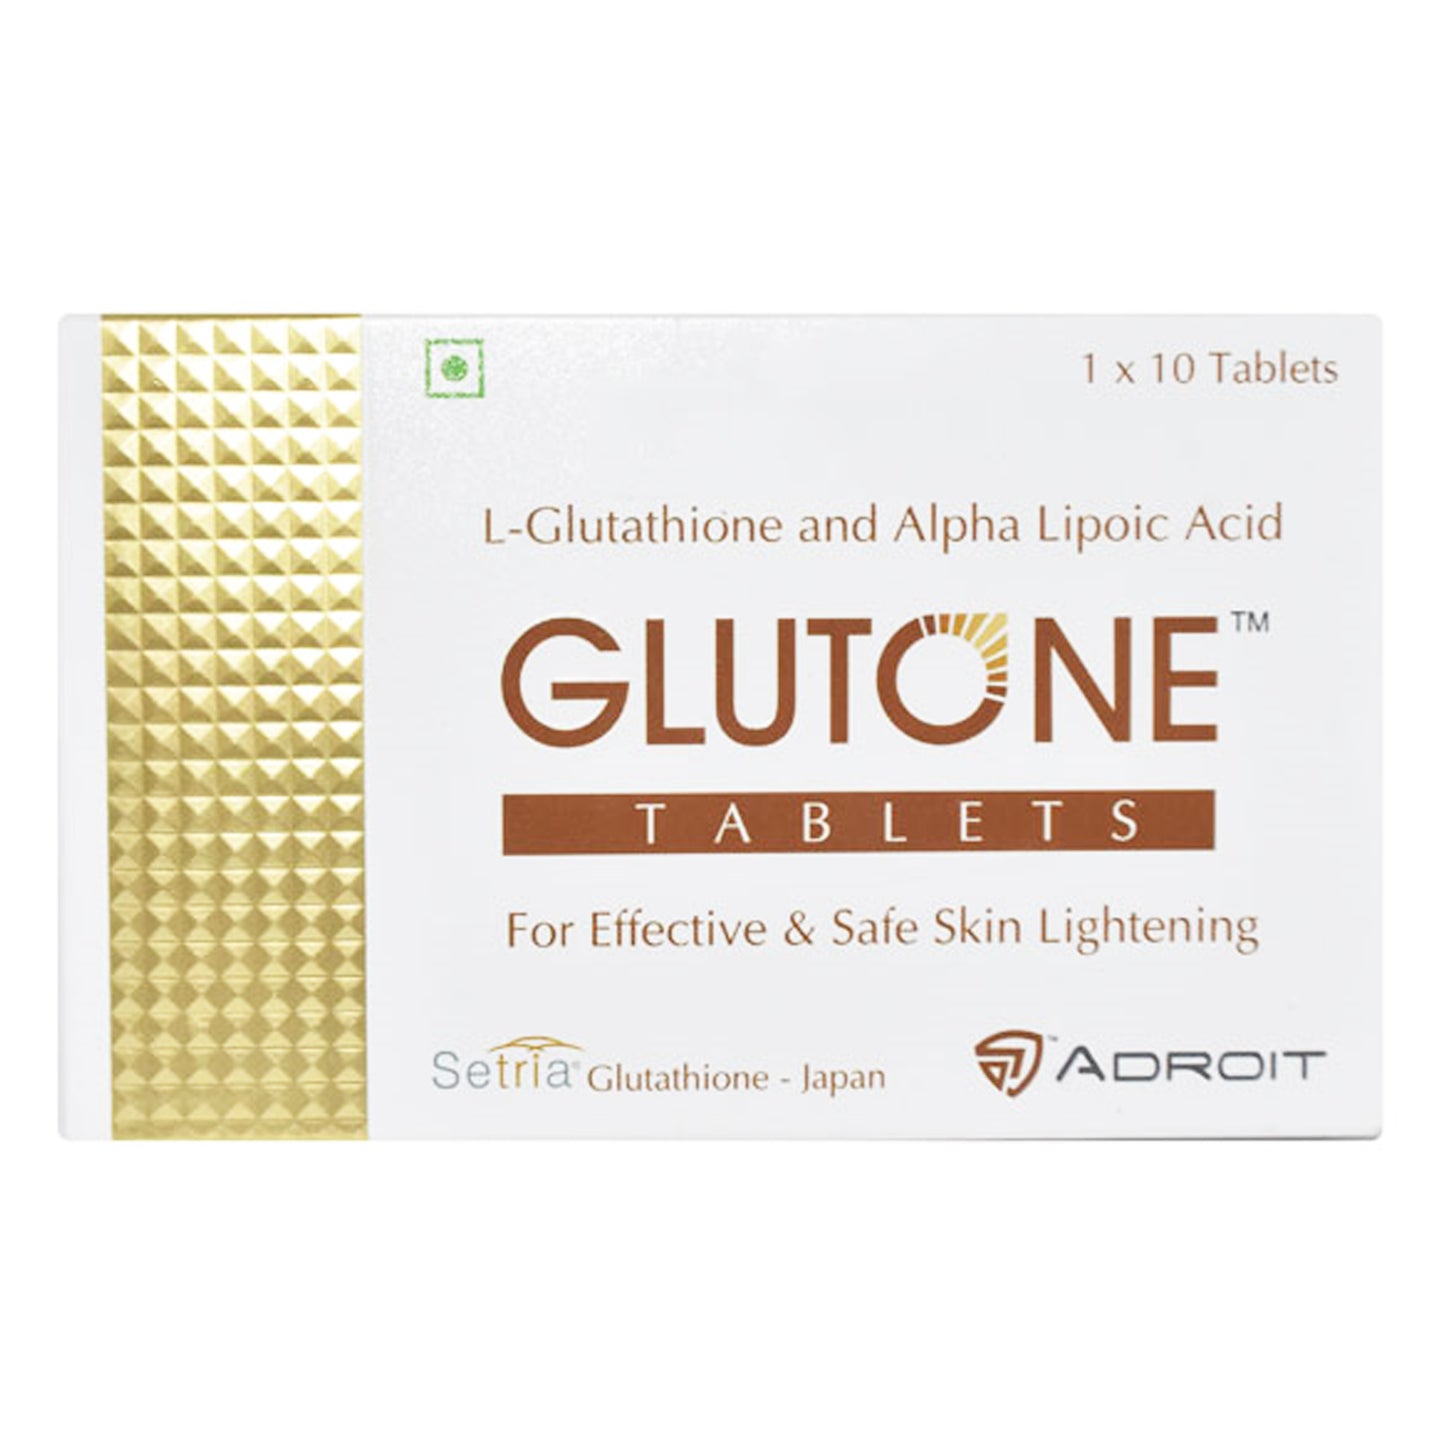 Skin Glow Glutone, 10 Tablets